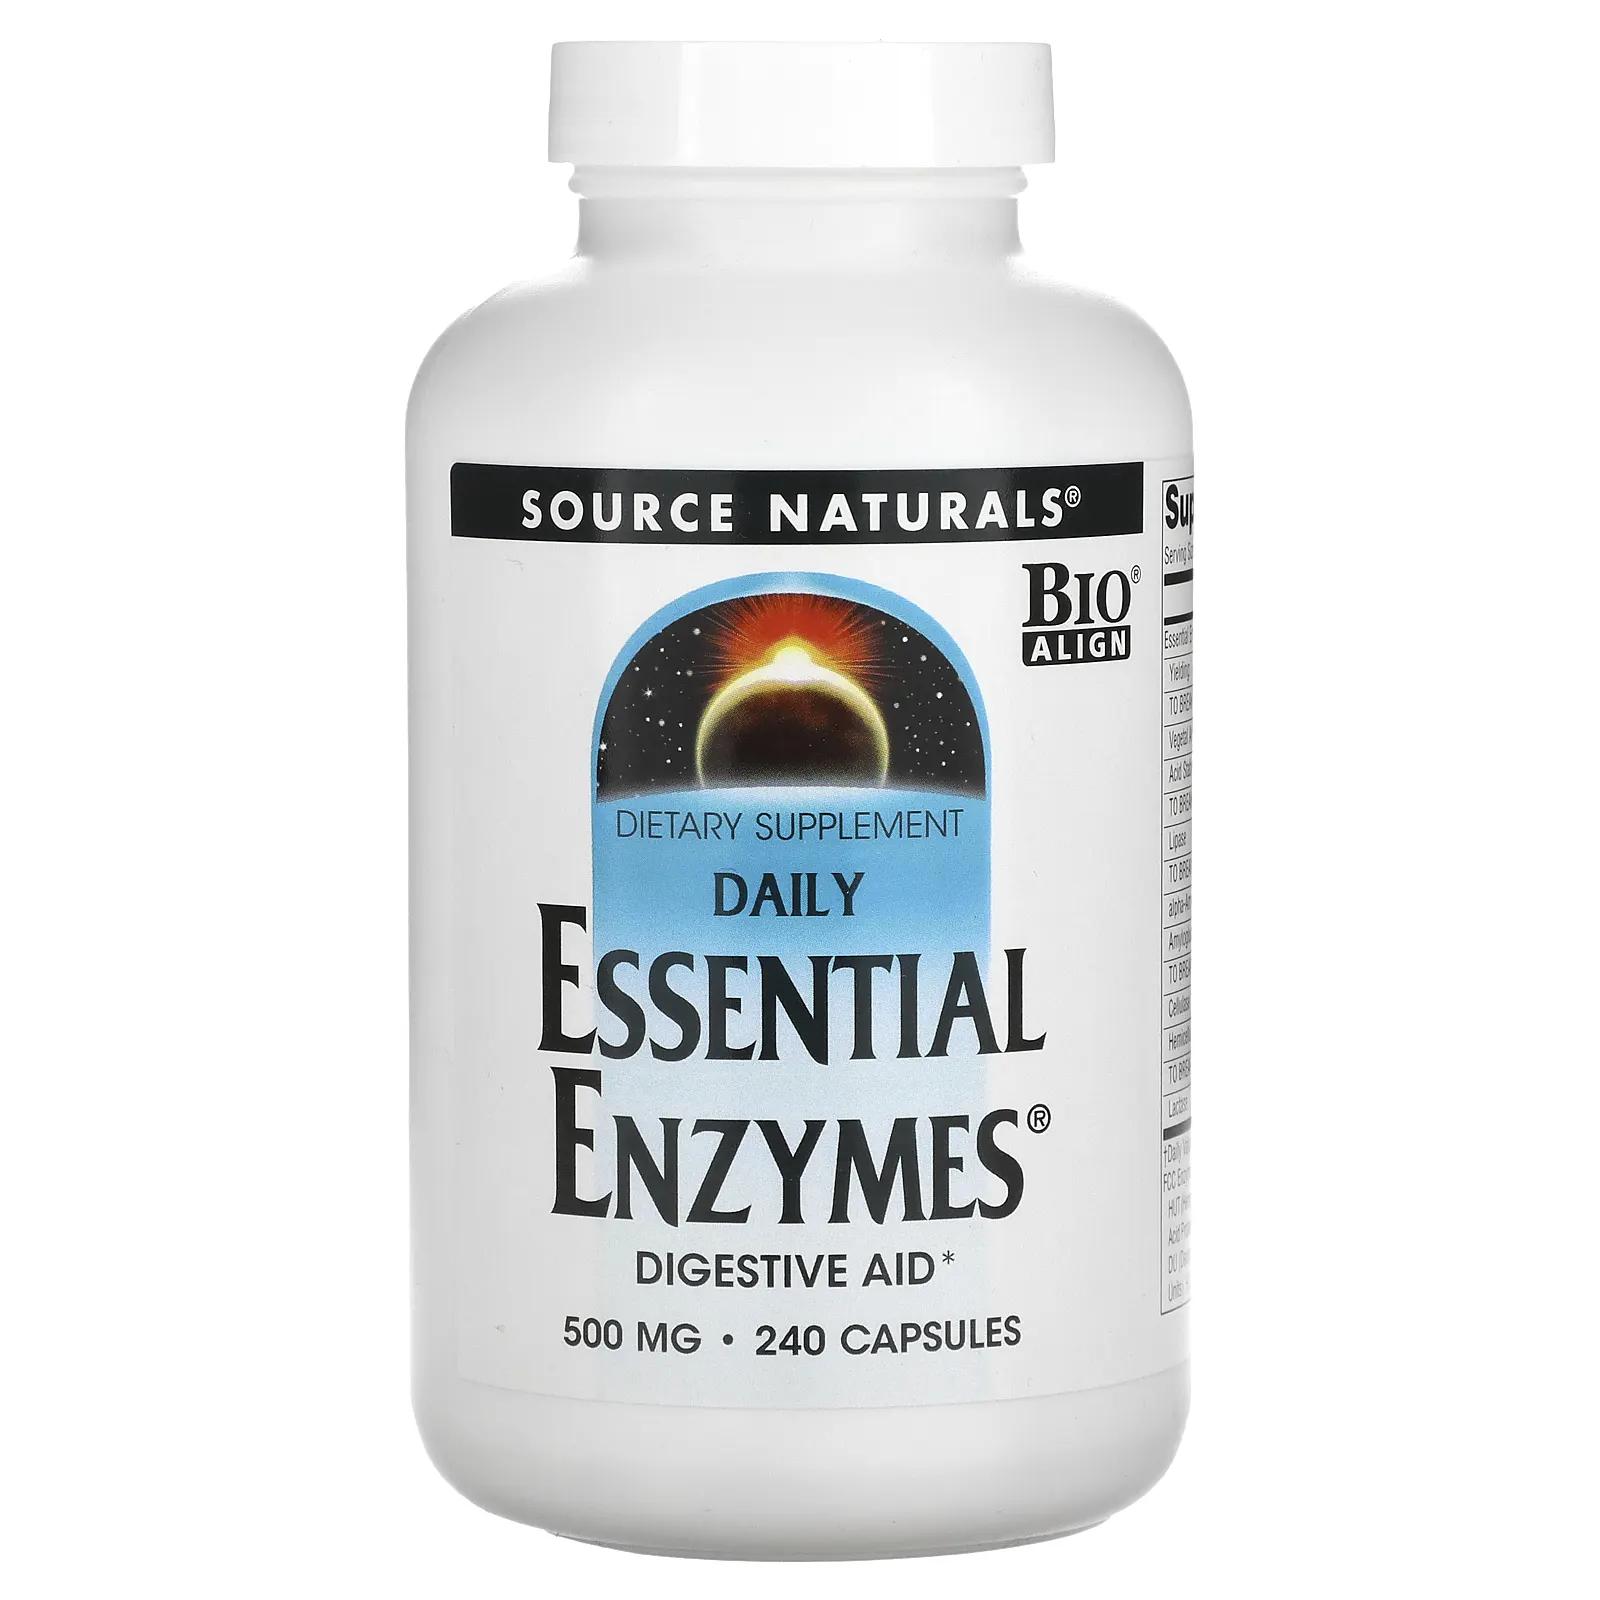 source naturals daily essential enzymes добавка с незаменимыми ферментами для ежедневного использования 500 мг 240 капсул Source Naturals Ферменты для ежедневного применения 500 мг 240 капсул